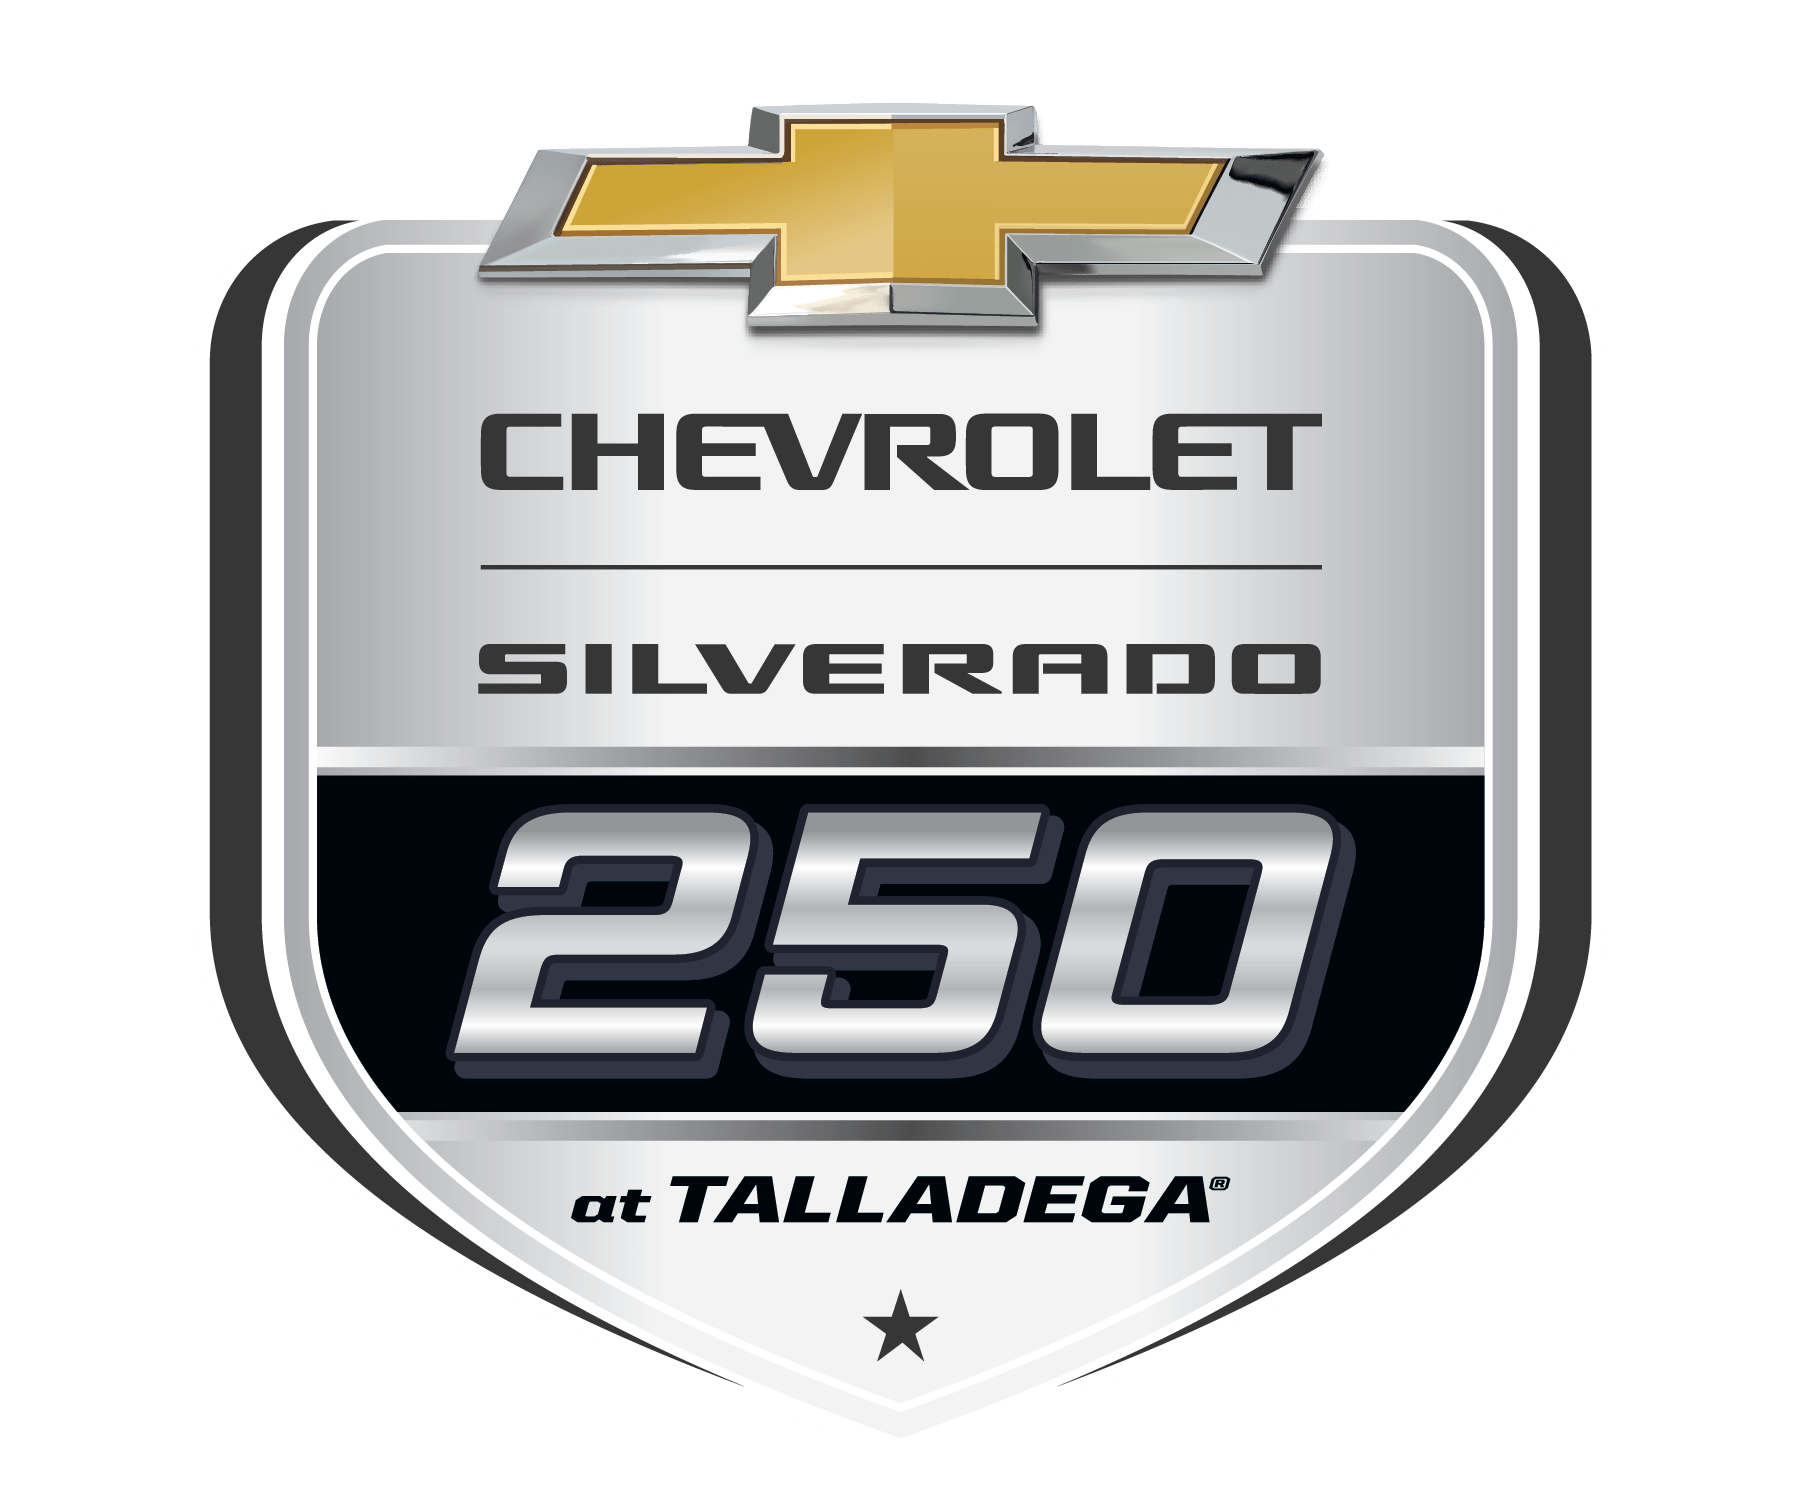 Chevy Silverado 250